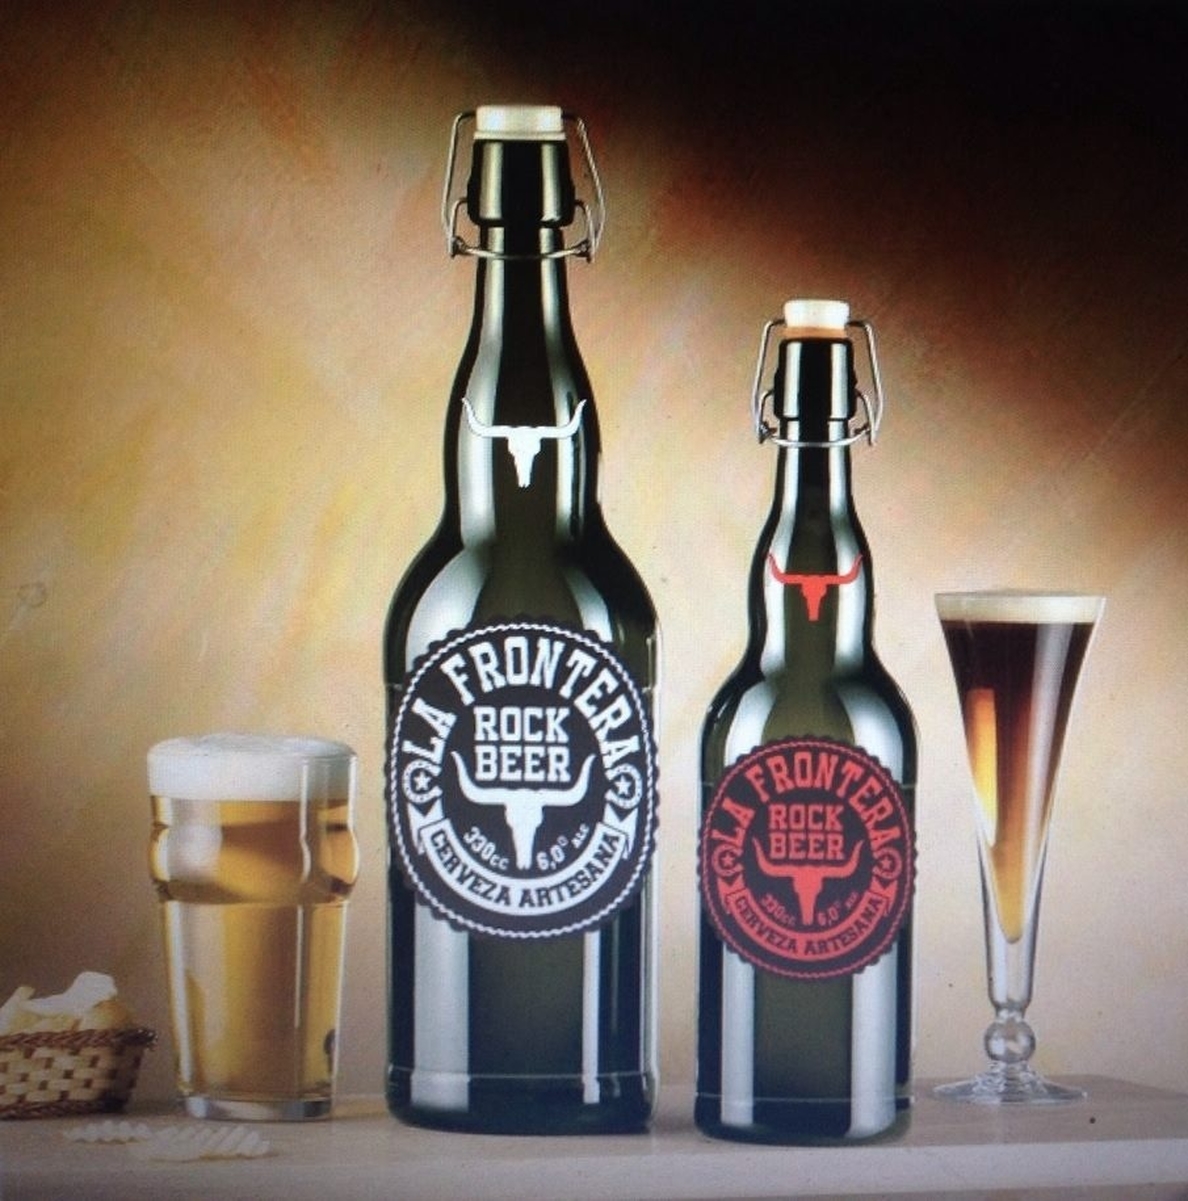 La Frontera ya tiene su propia cerveza artesana: Rock Beer